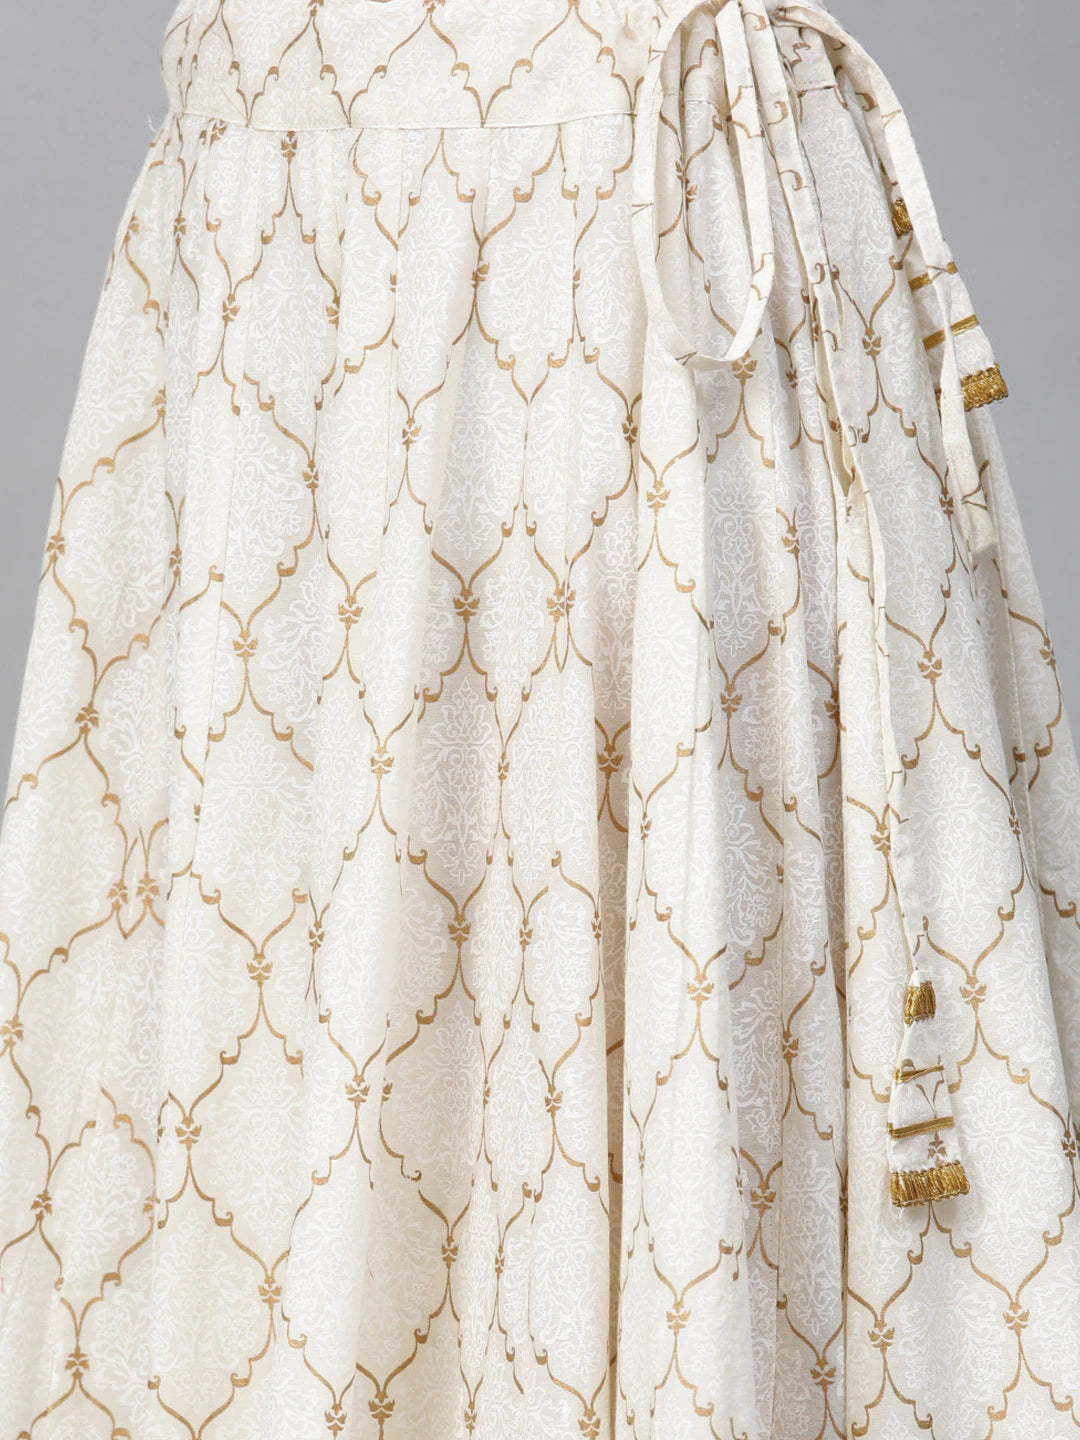 Women's Mustard Yellow And White Gotta Patti Striped Kurta With Block Printed Skirt - Bhama Couture